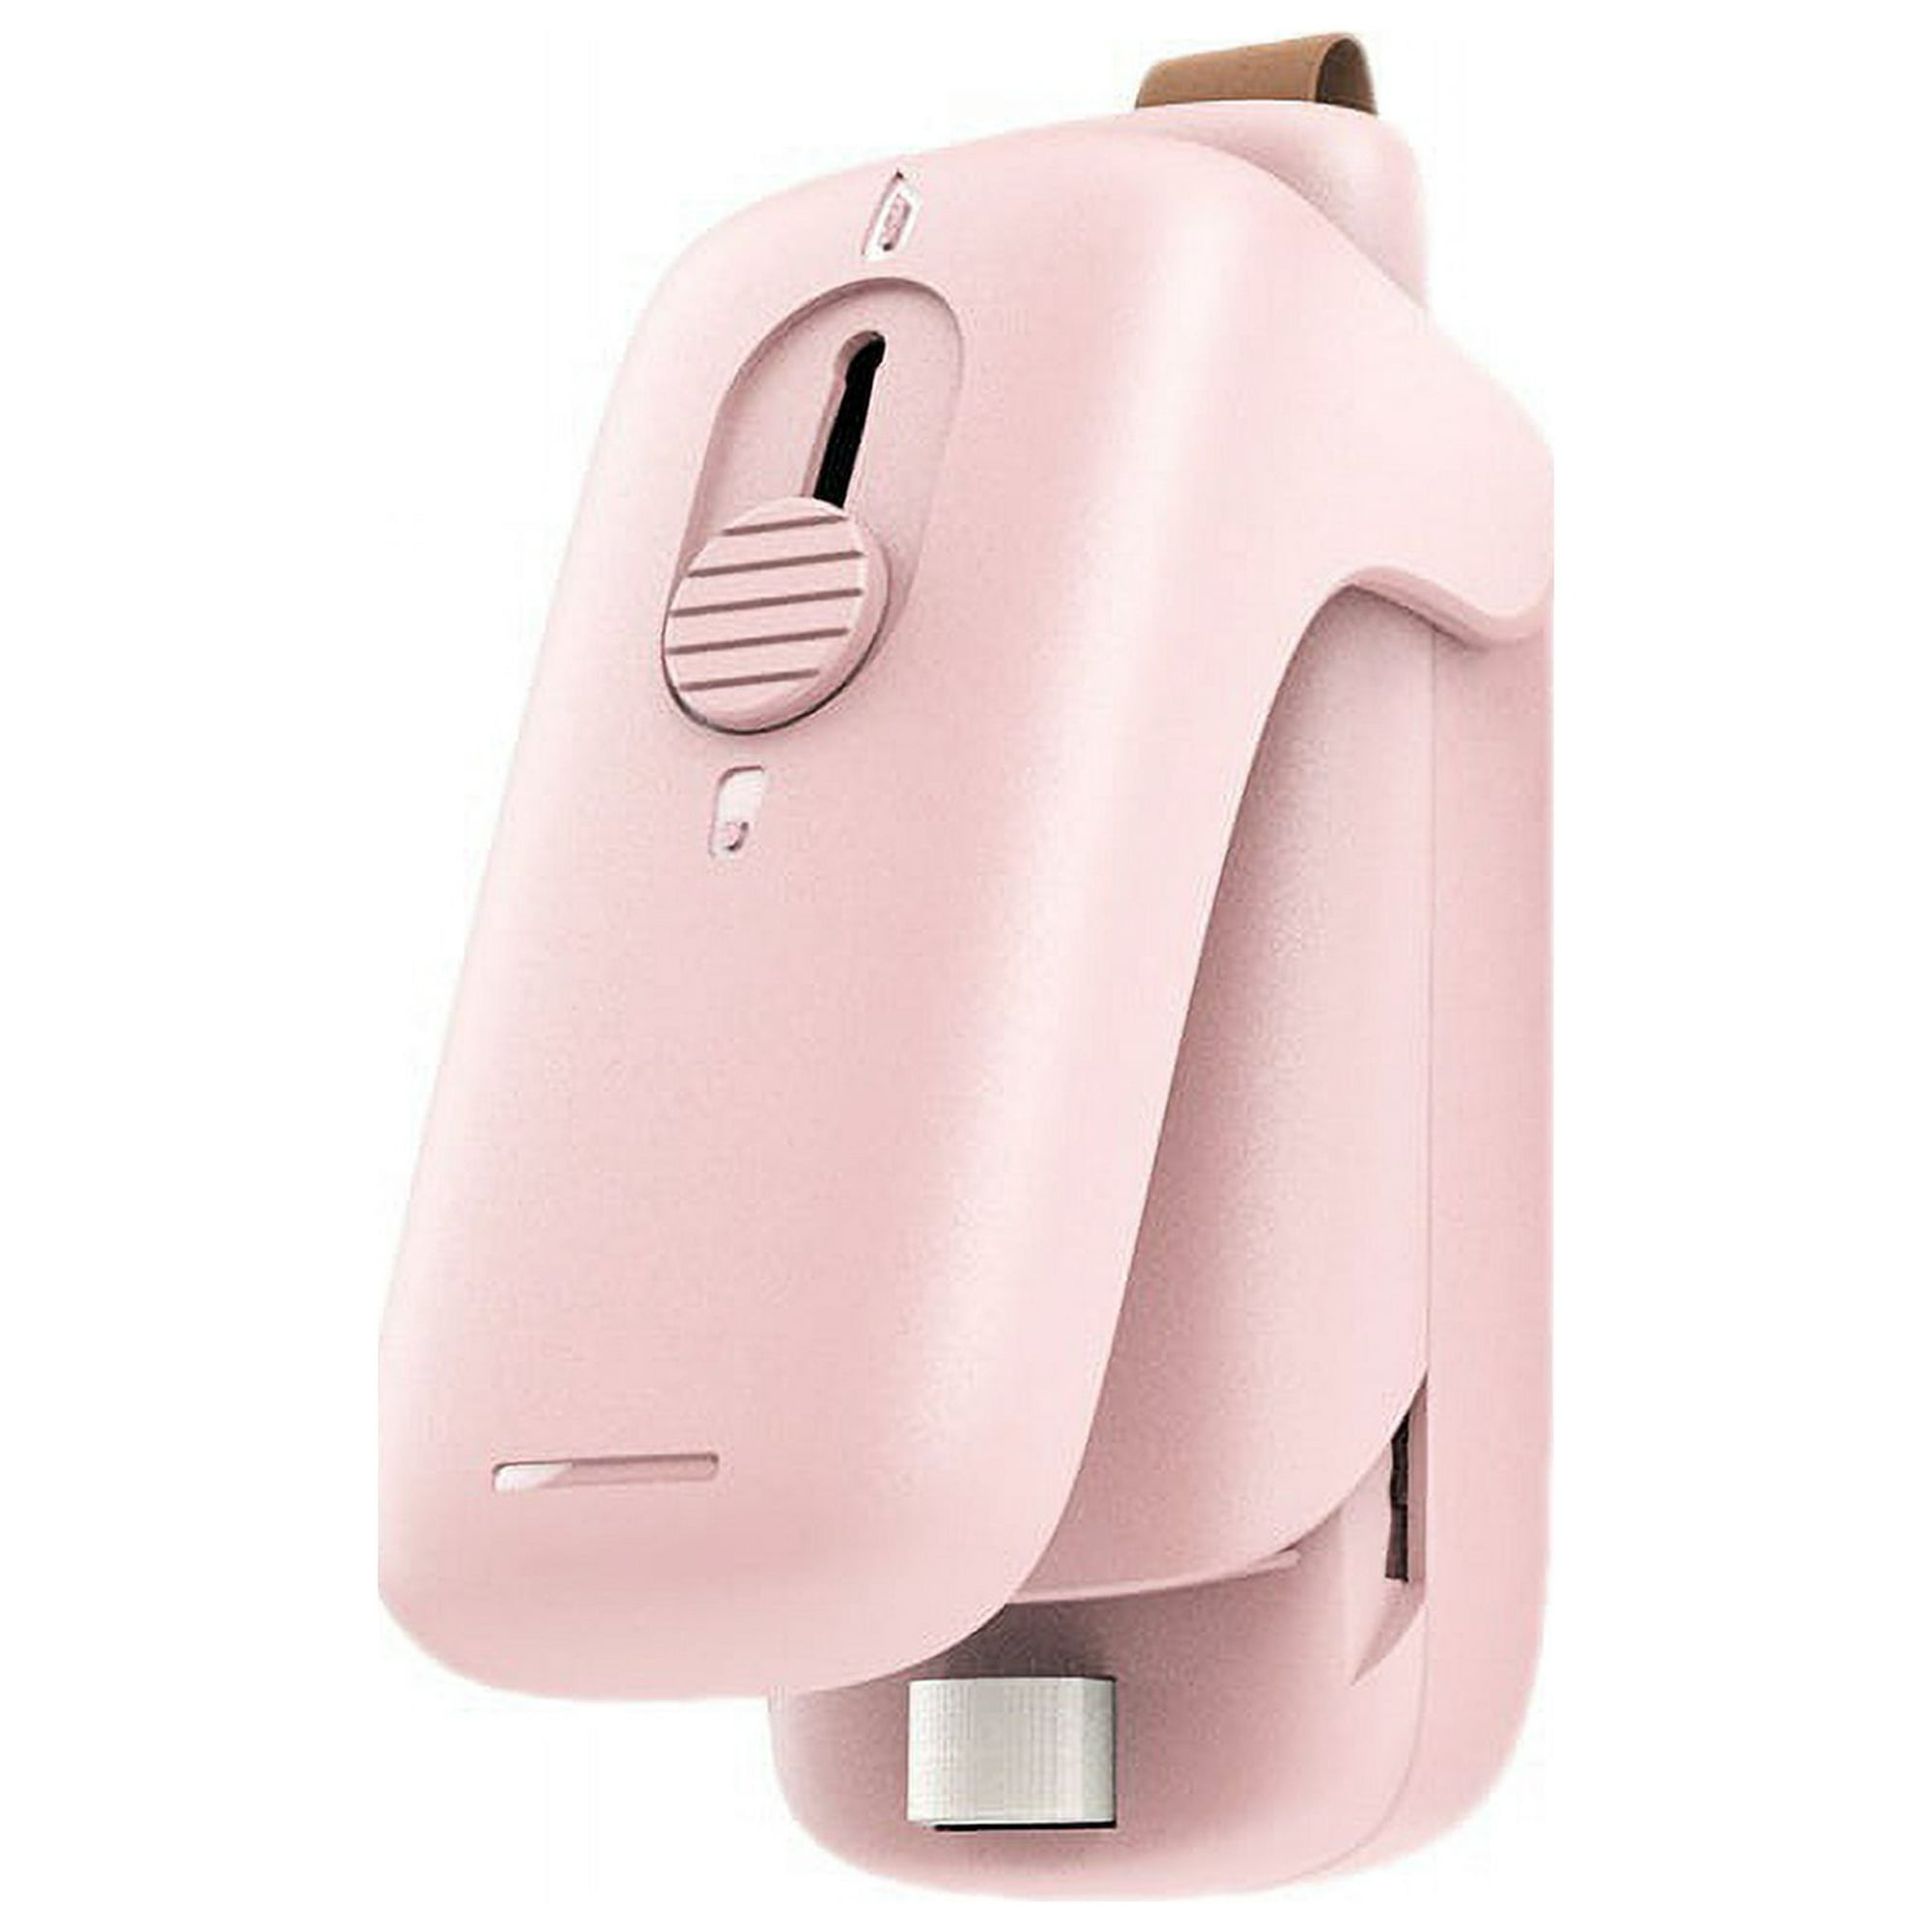 Batería de Cocina Mini pinzas de sellado para bolsas de alimentos  portátiles, 2 uds., abrazadera selladora para almacenamiento de aperitivos  (rosa) Likrtyny Libre de BPA